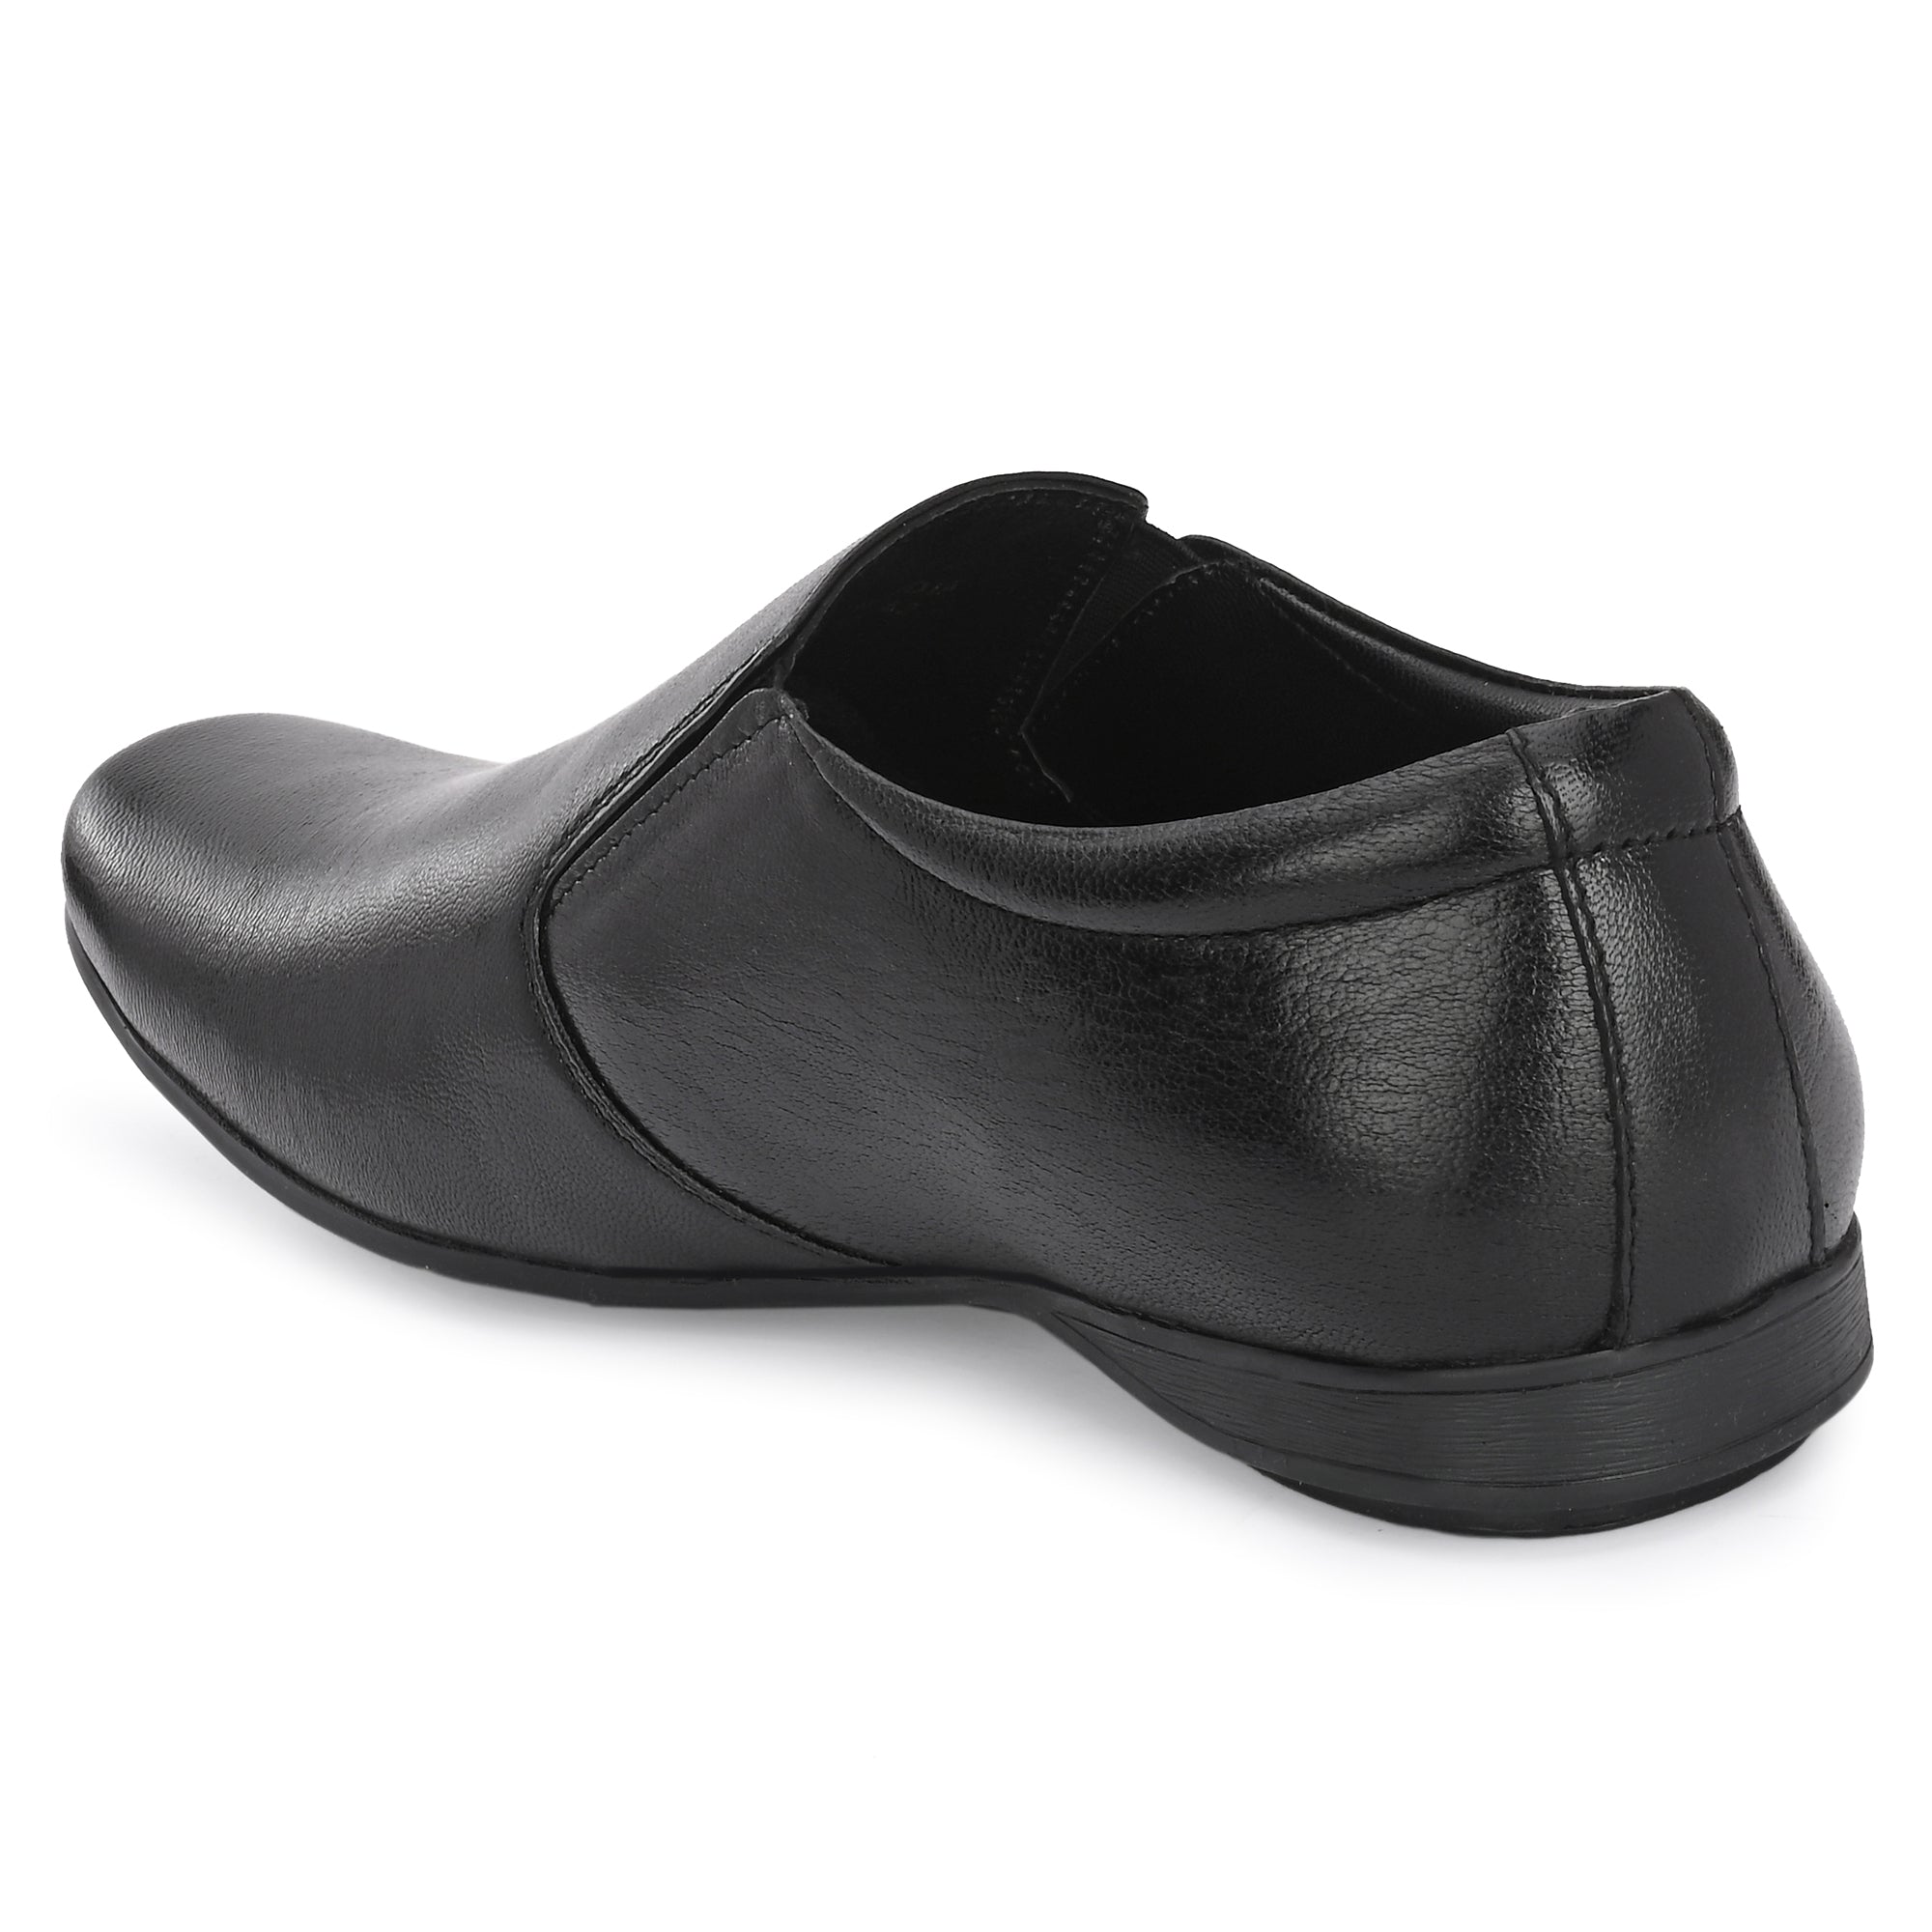 Egoss Formal Slip On Shoes For Men